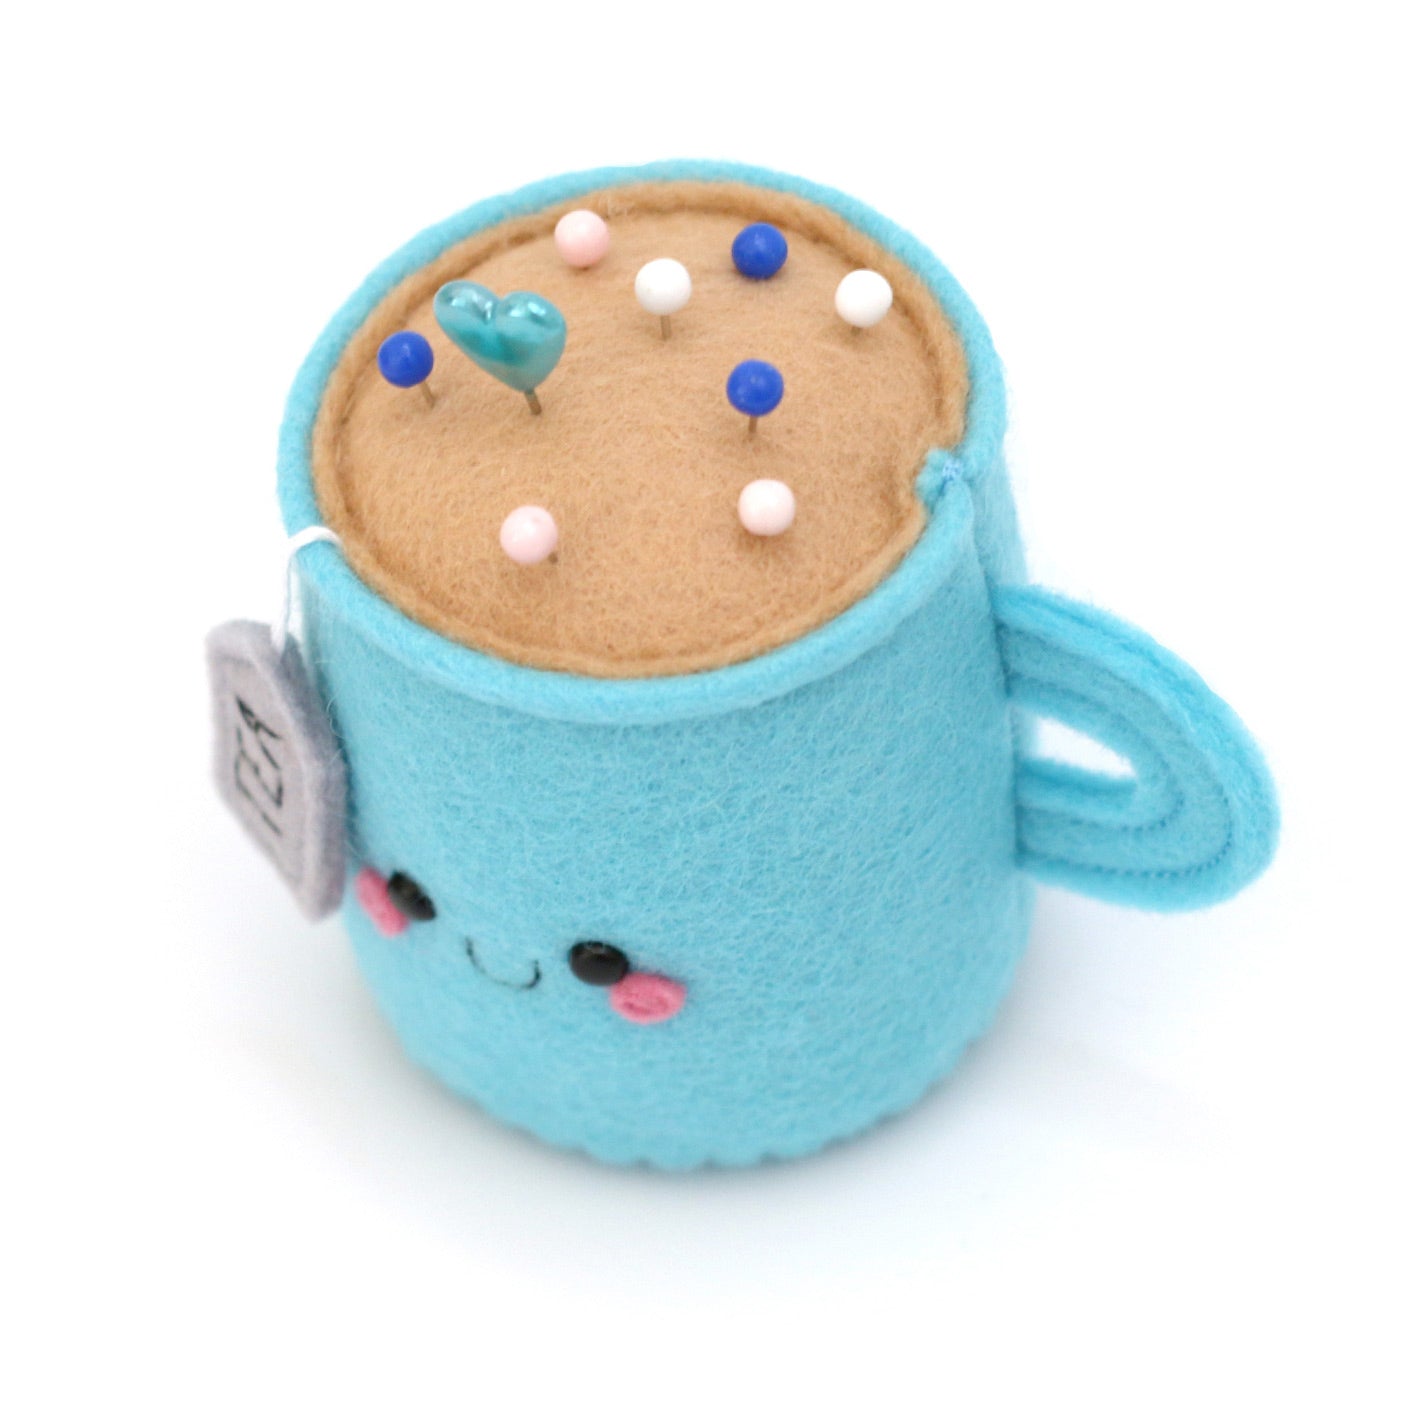 Blue Teacup Pincushion cute pin storage